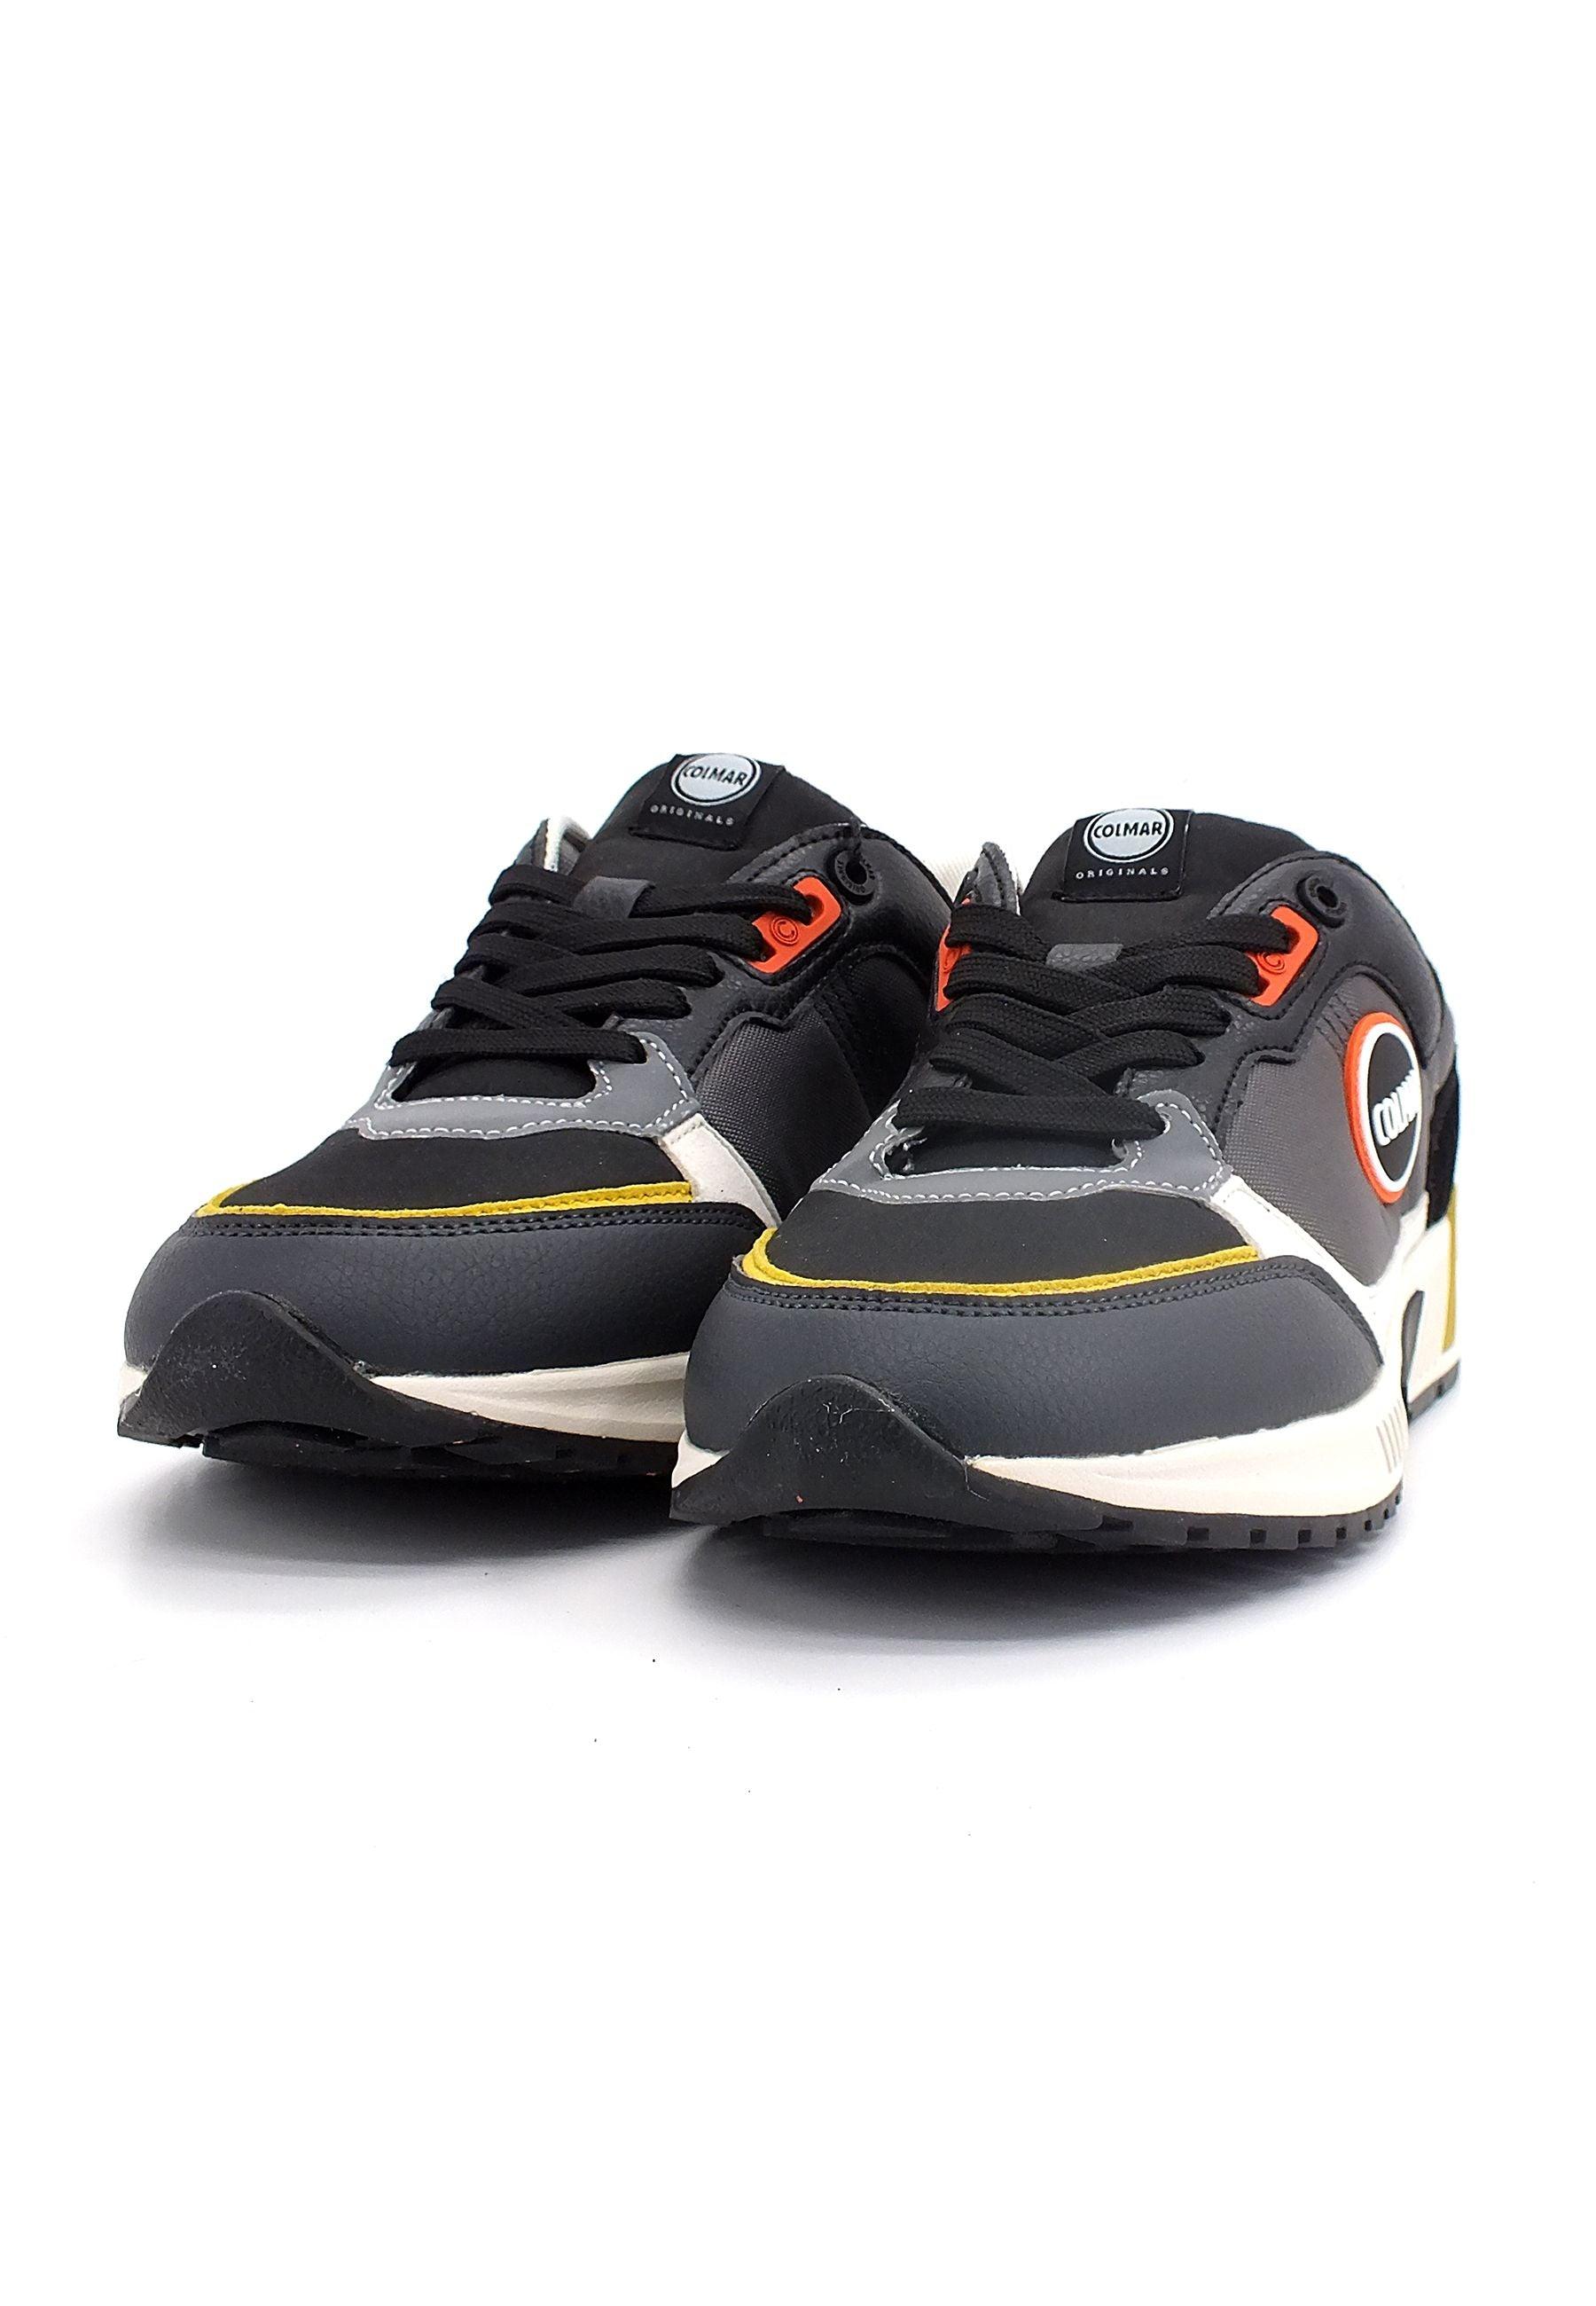 COLMAR Sneaker Uomo Dark Grey Black Ochre DALTON BACKWORD - Sandrini Calzature e Abbigliamento